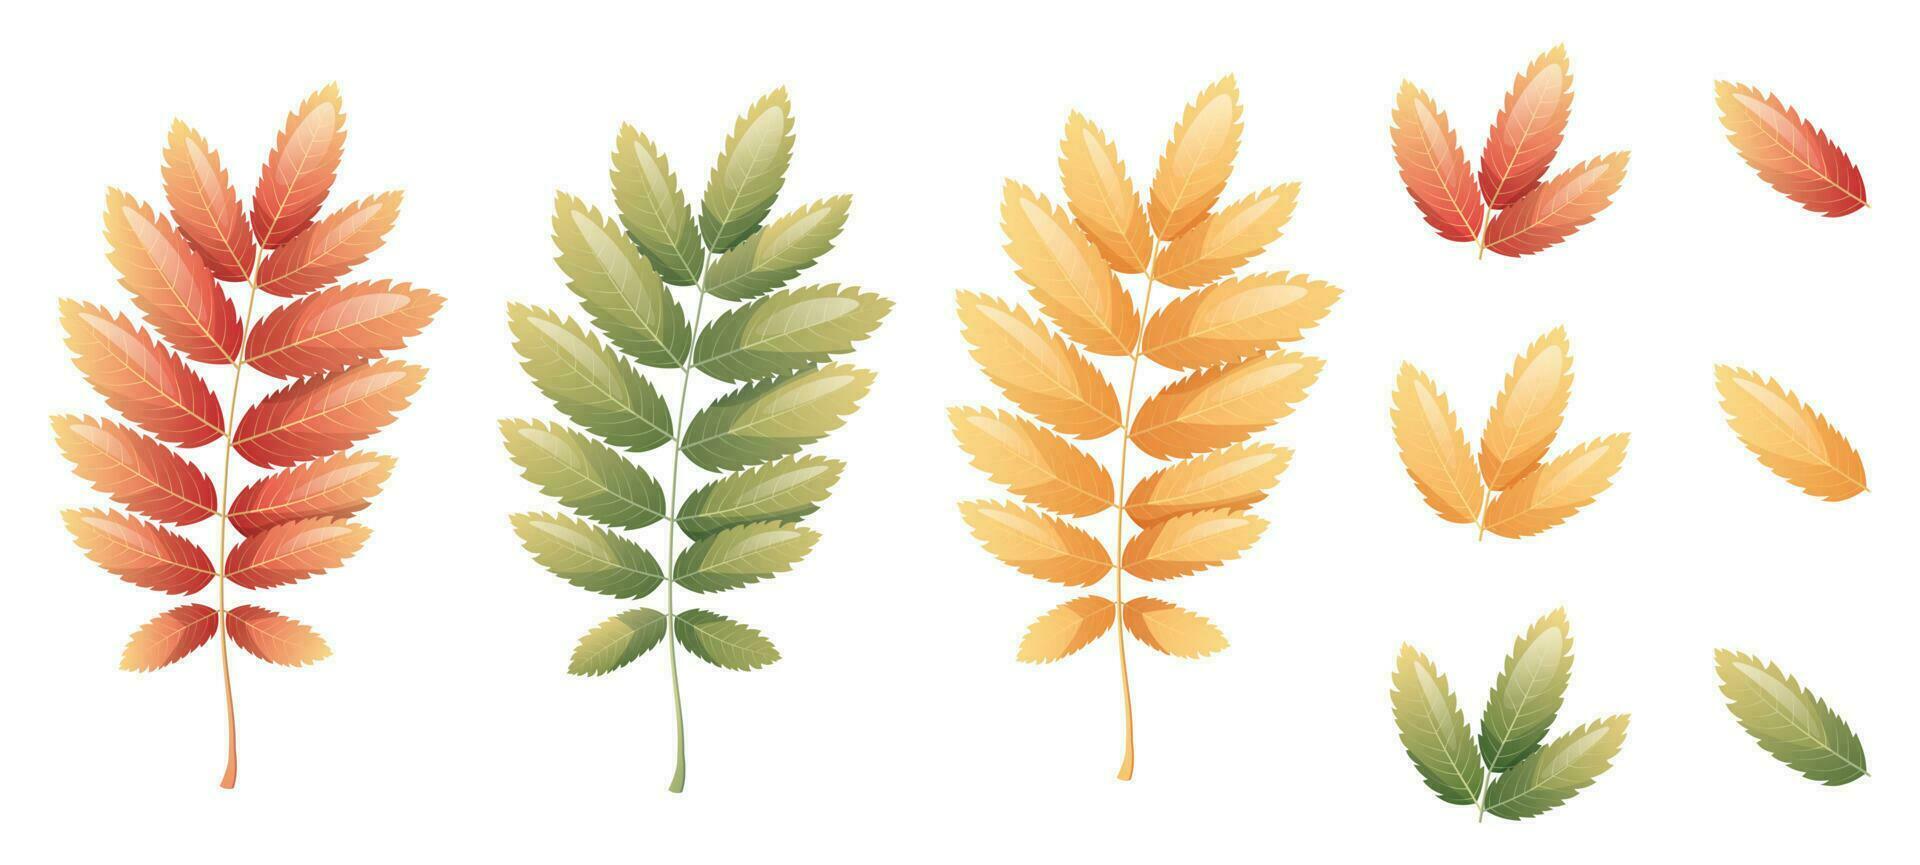 Eberesche Blätter auf ein Weiß Hintergrund. einstellen von mehrfarbig Herbst Blätter. Karikatur Vektor Illustration. Hallo Herbst, saisonal Thema